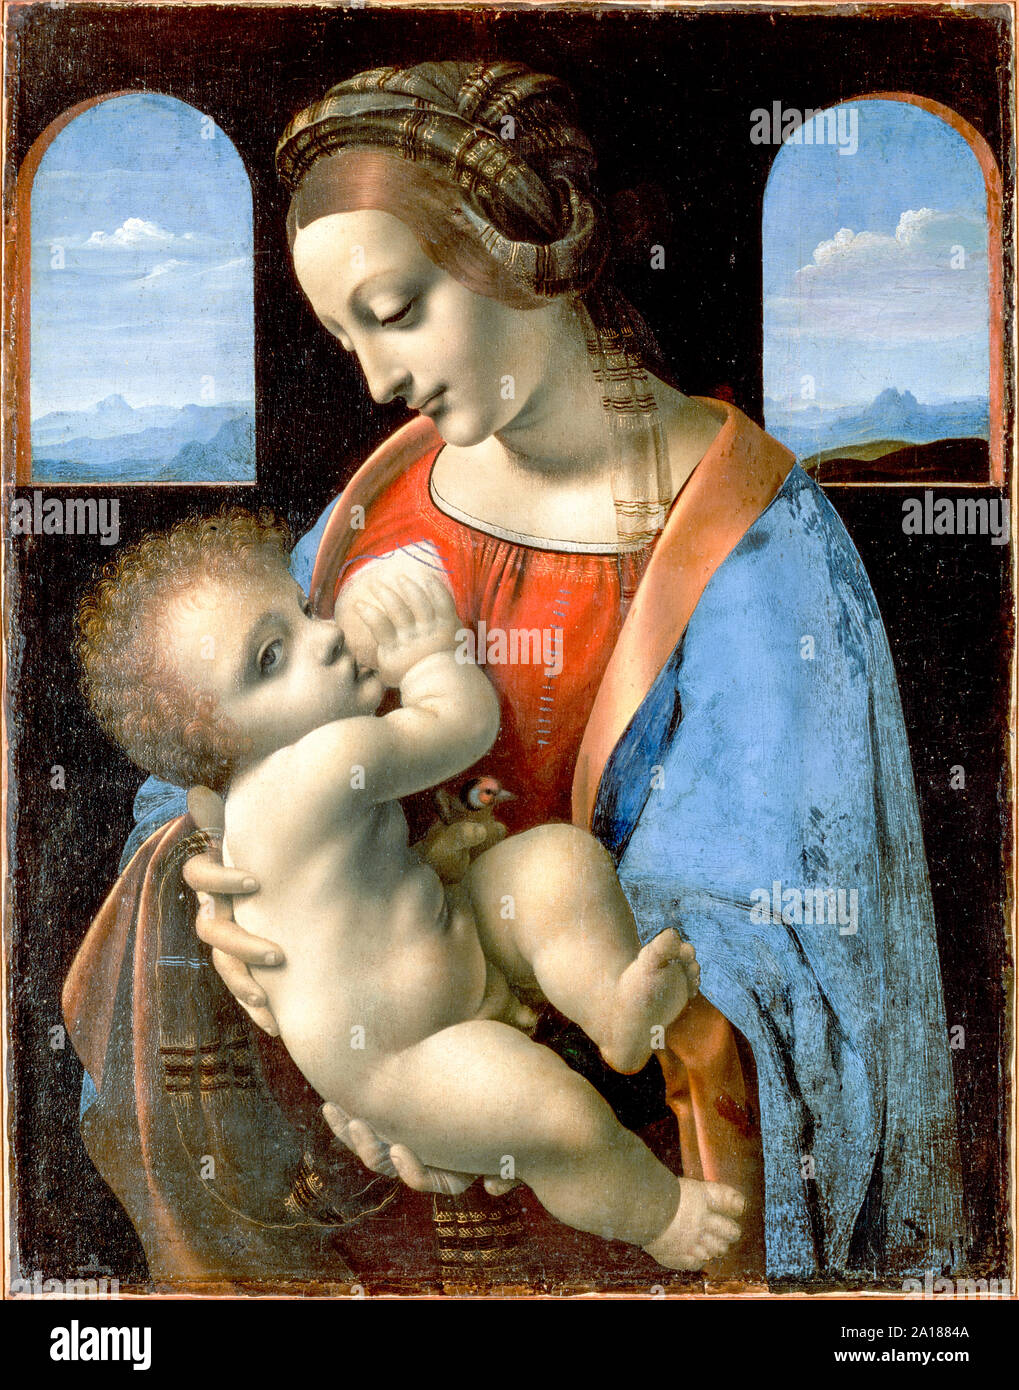 Madonna Litta de Leonardo da Vinci (1452-1519) pintó circa 1490 mostrando la Virgen María amamantando al niño Cristo quien sostiene un jilguero en su mano izquierda, símbolo de su futura pasión. Foto de stock